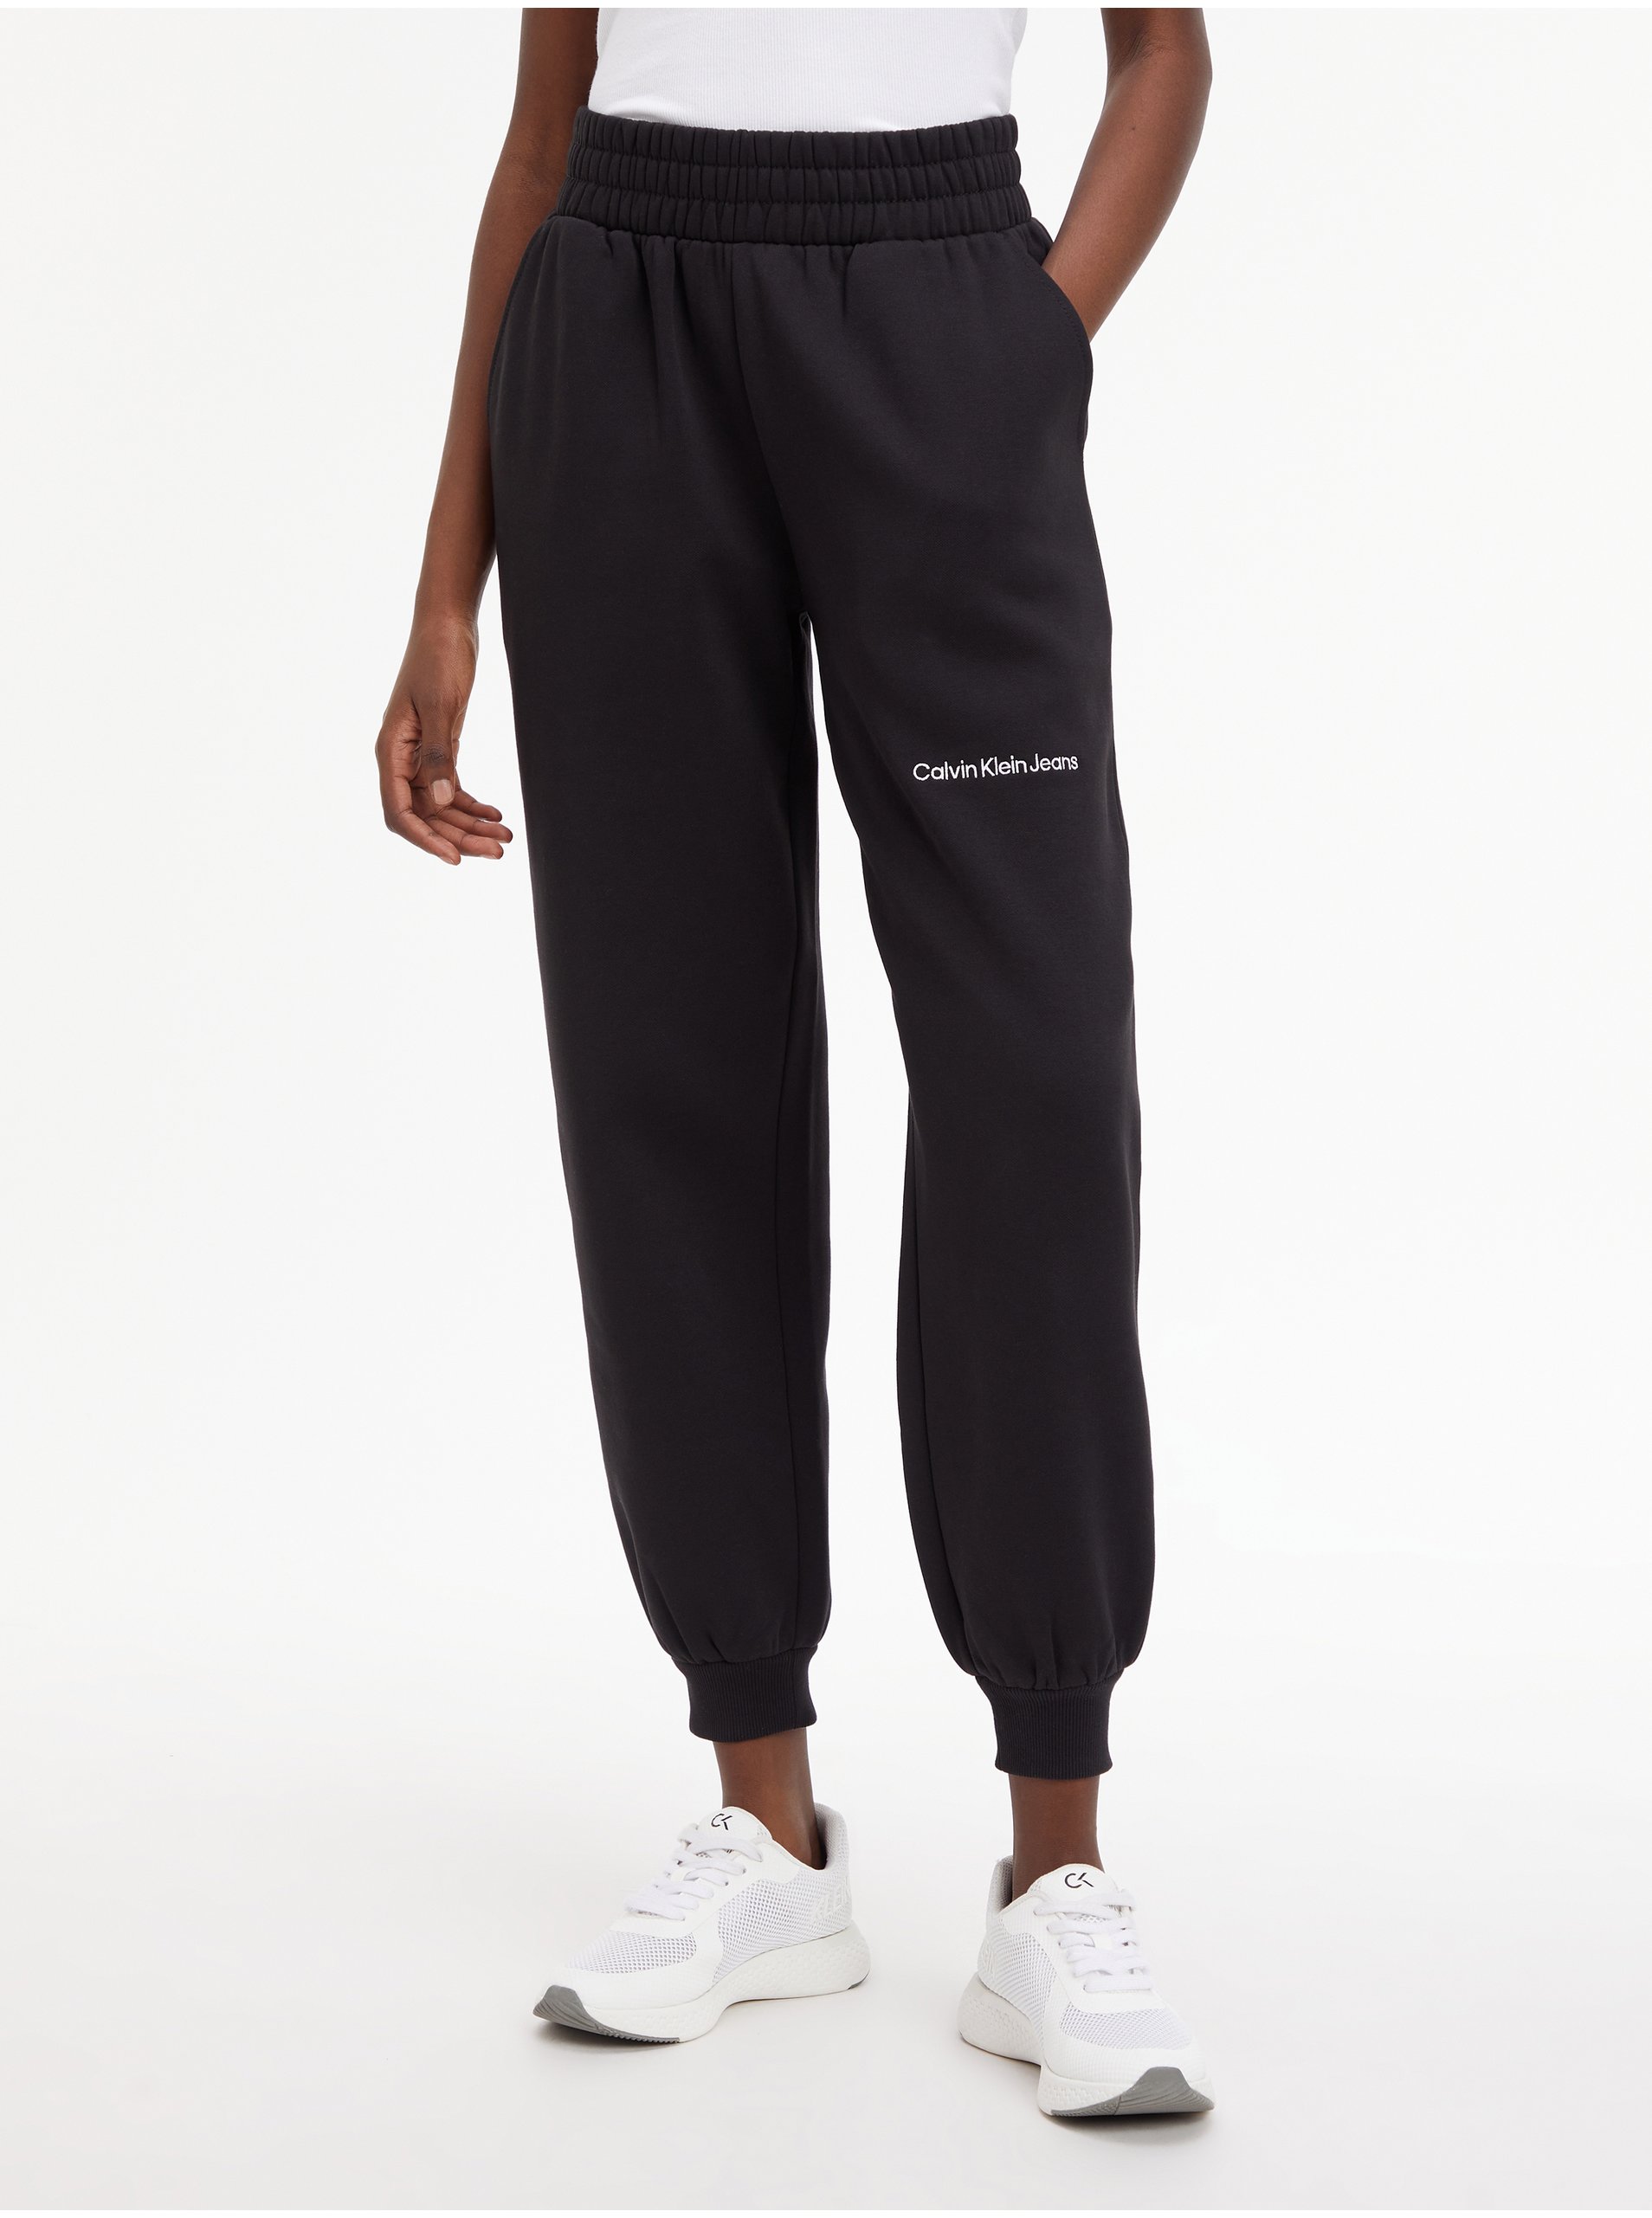 E-shop Černé dámské zkrácené tepláky Calvin Klein Jeans